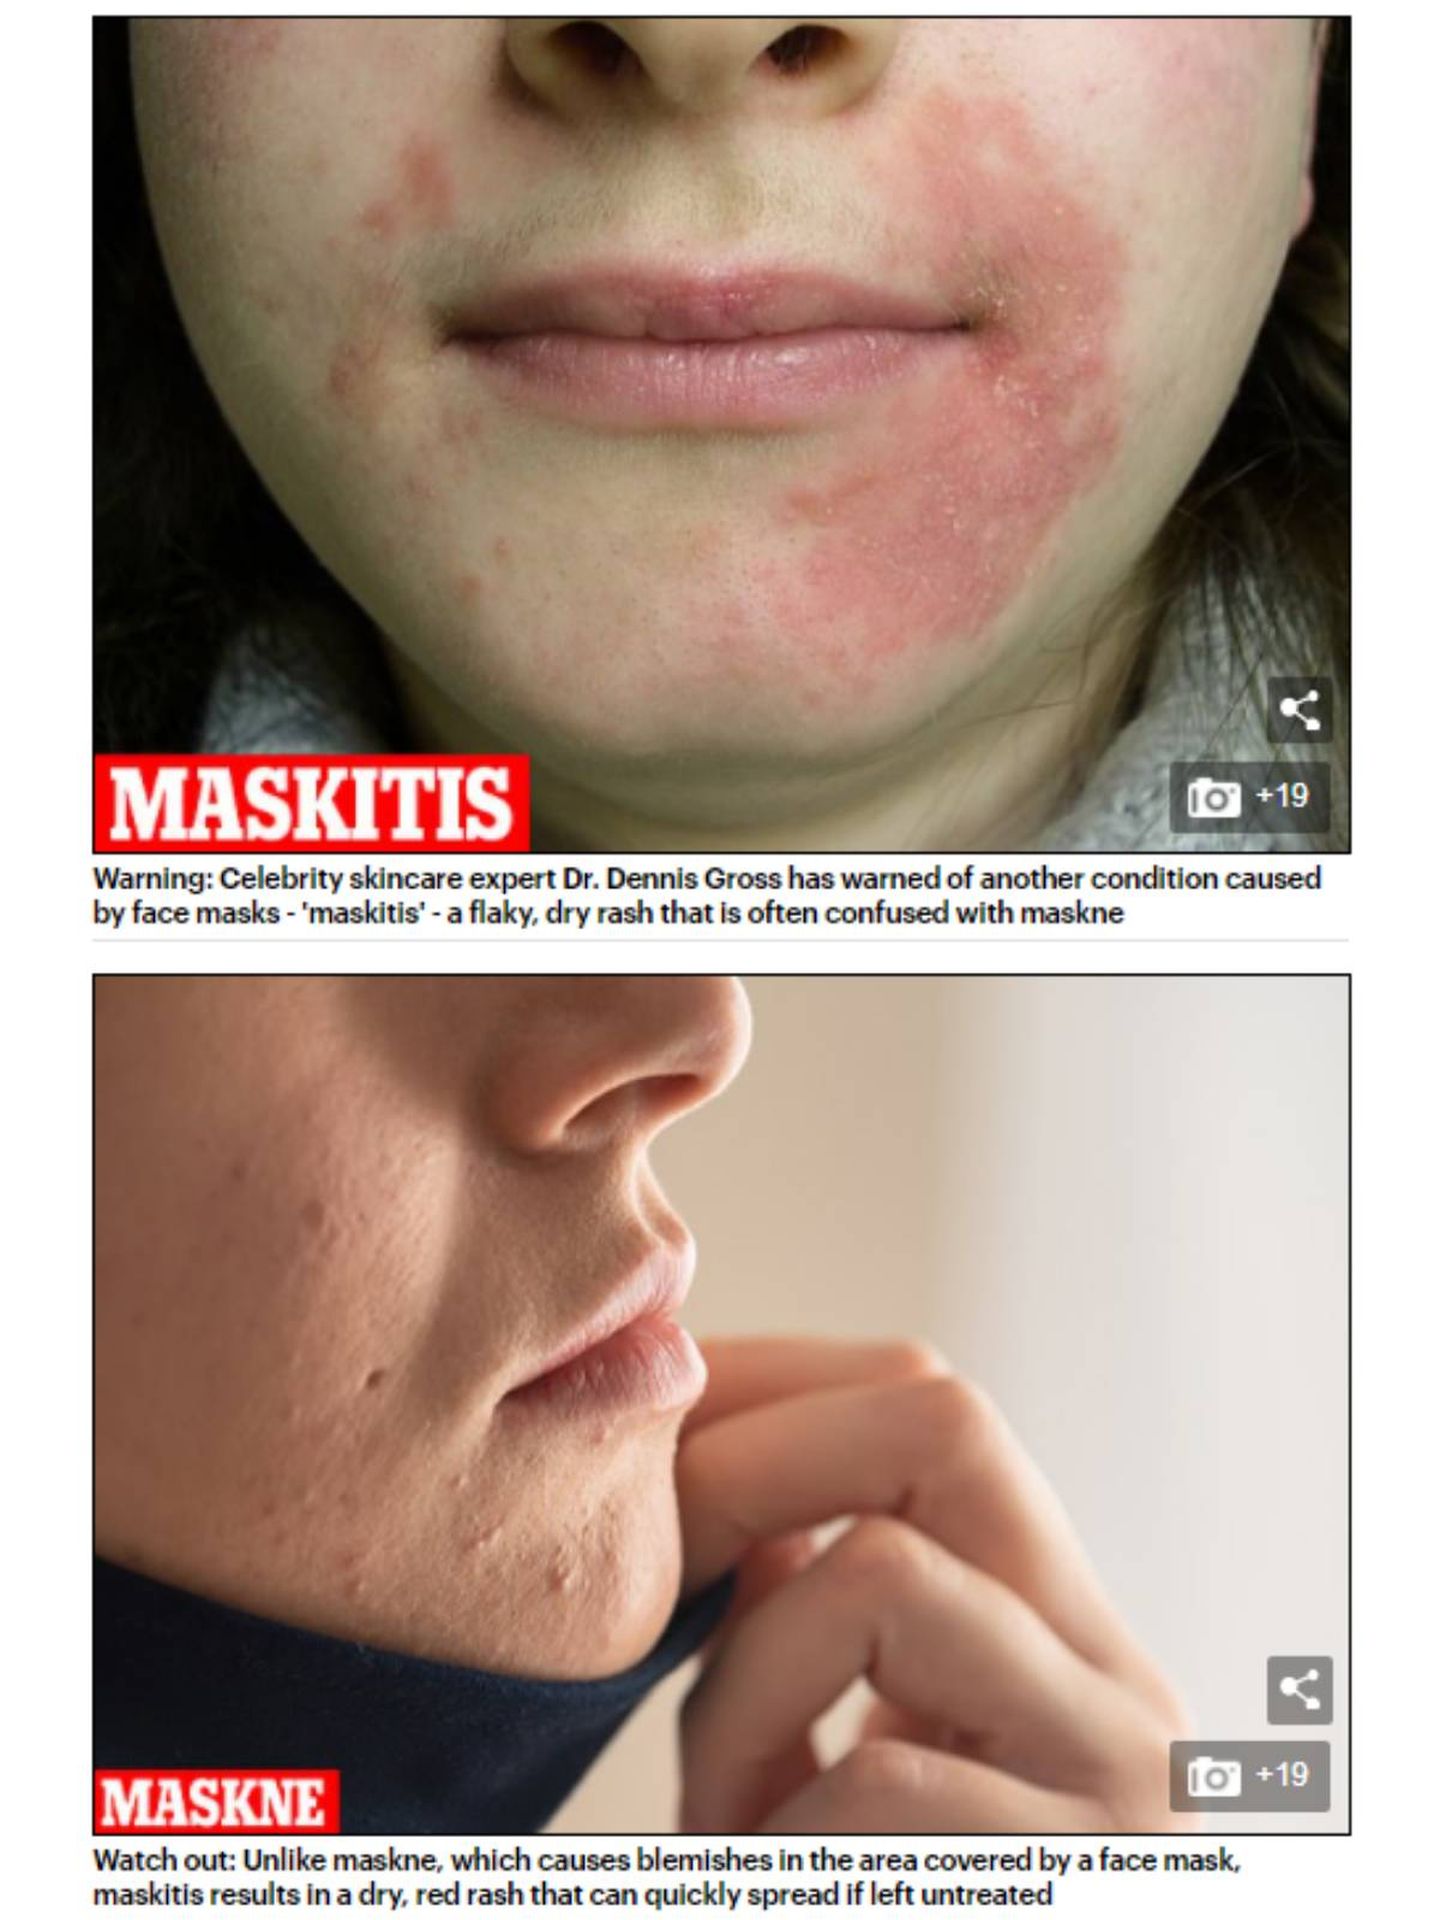 Imagen de un caso de maskitis frente uno de maské en el artículo del Daily Mail 'Are YOU suffering from 'maskitis'? 